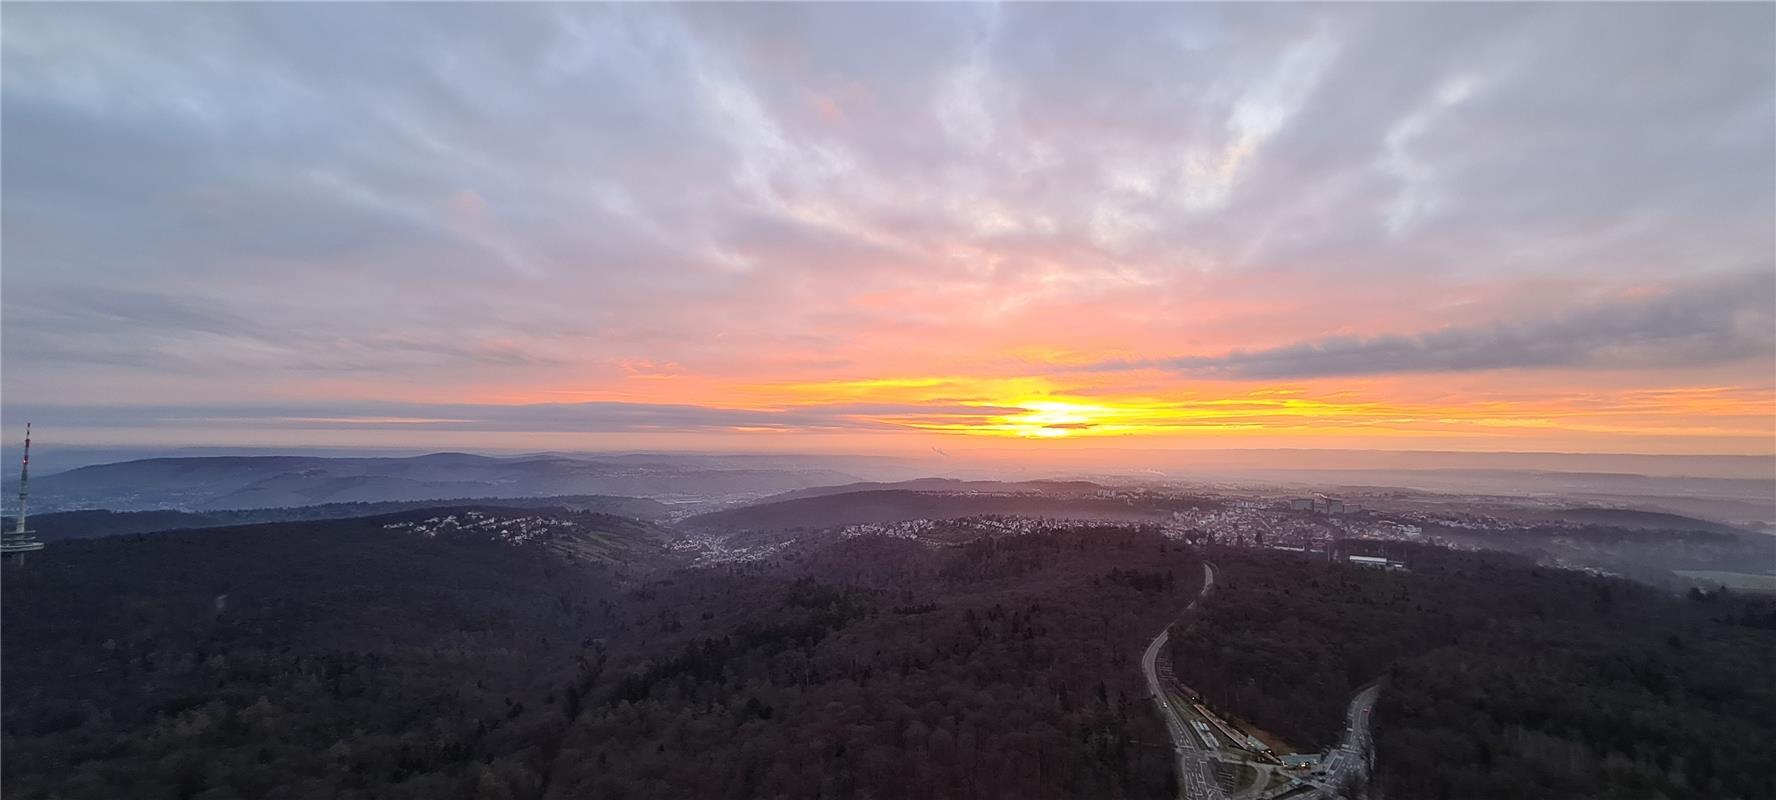 Sonnenaufgang-Event im Fernsehturm Stuttgart... wunderschön!  Von Ivonne Wetzste...